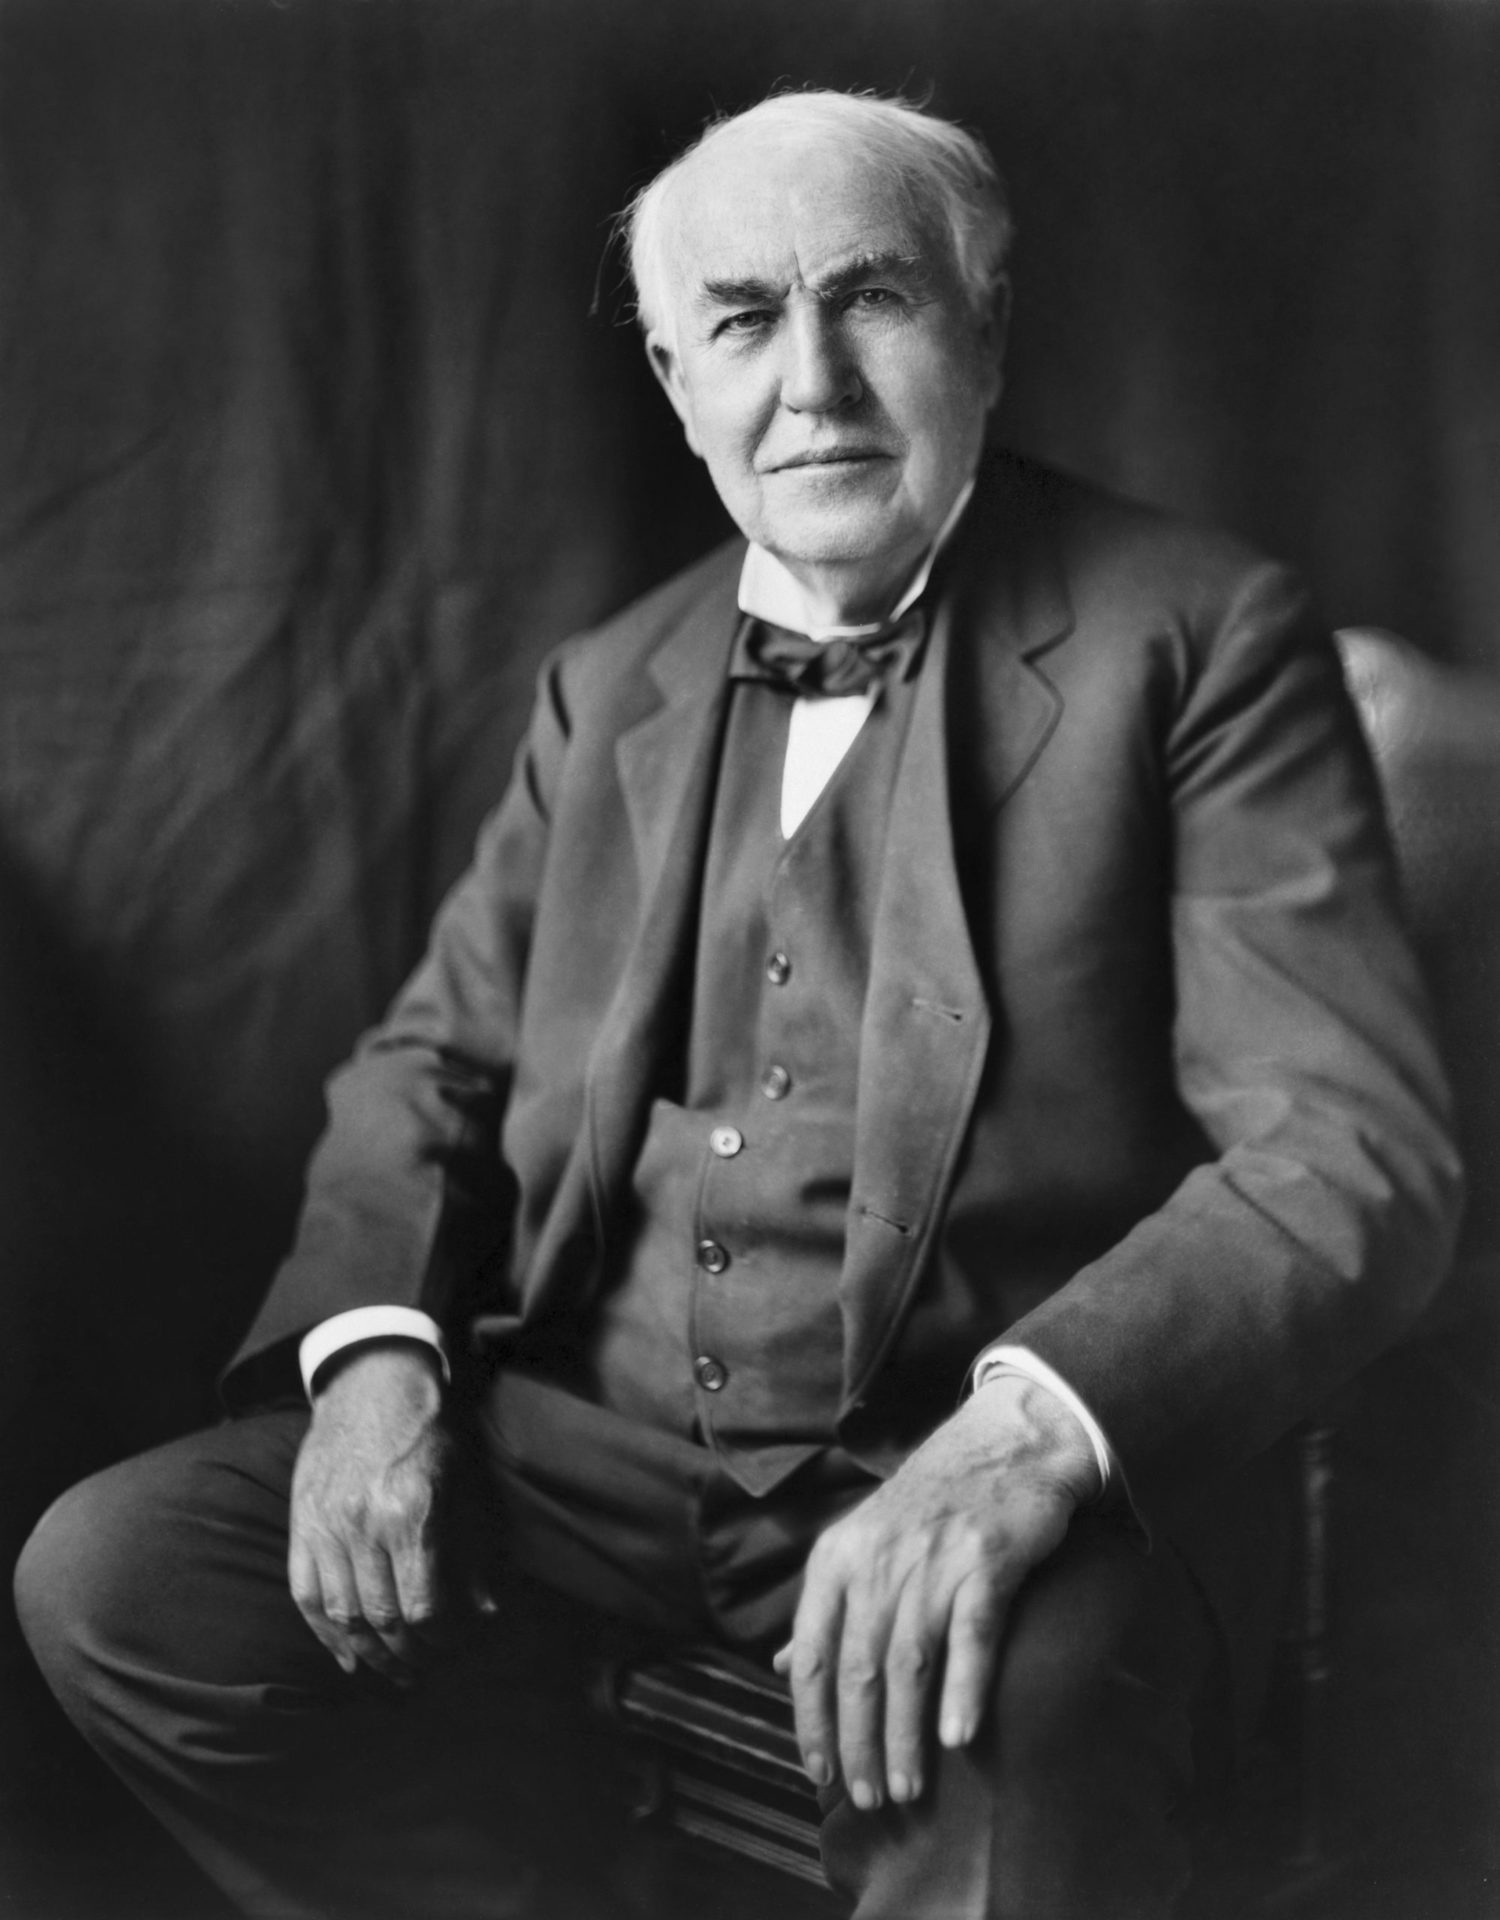 Thomas Edison black and white photograph